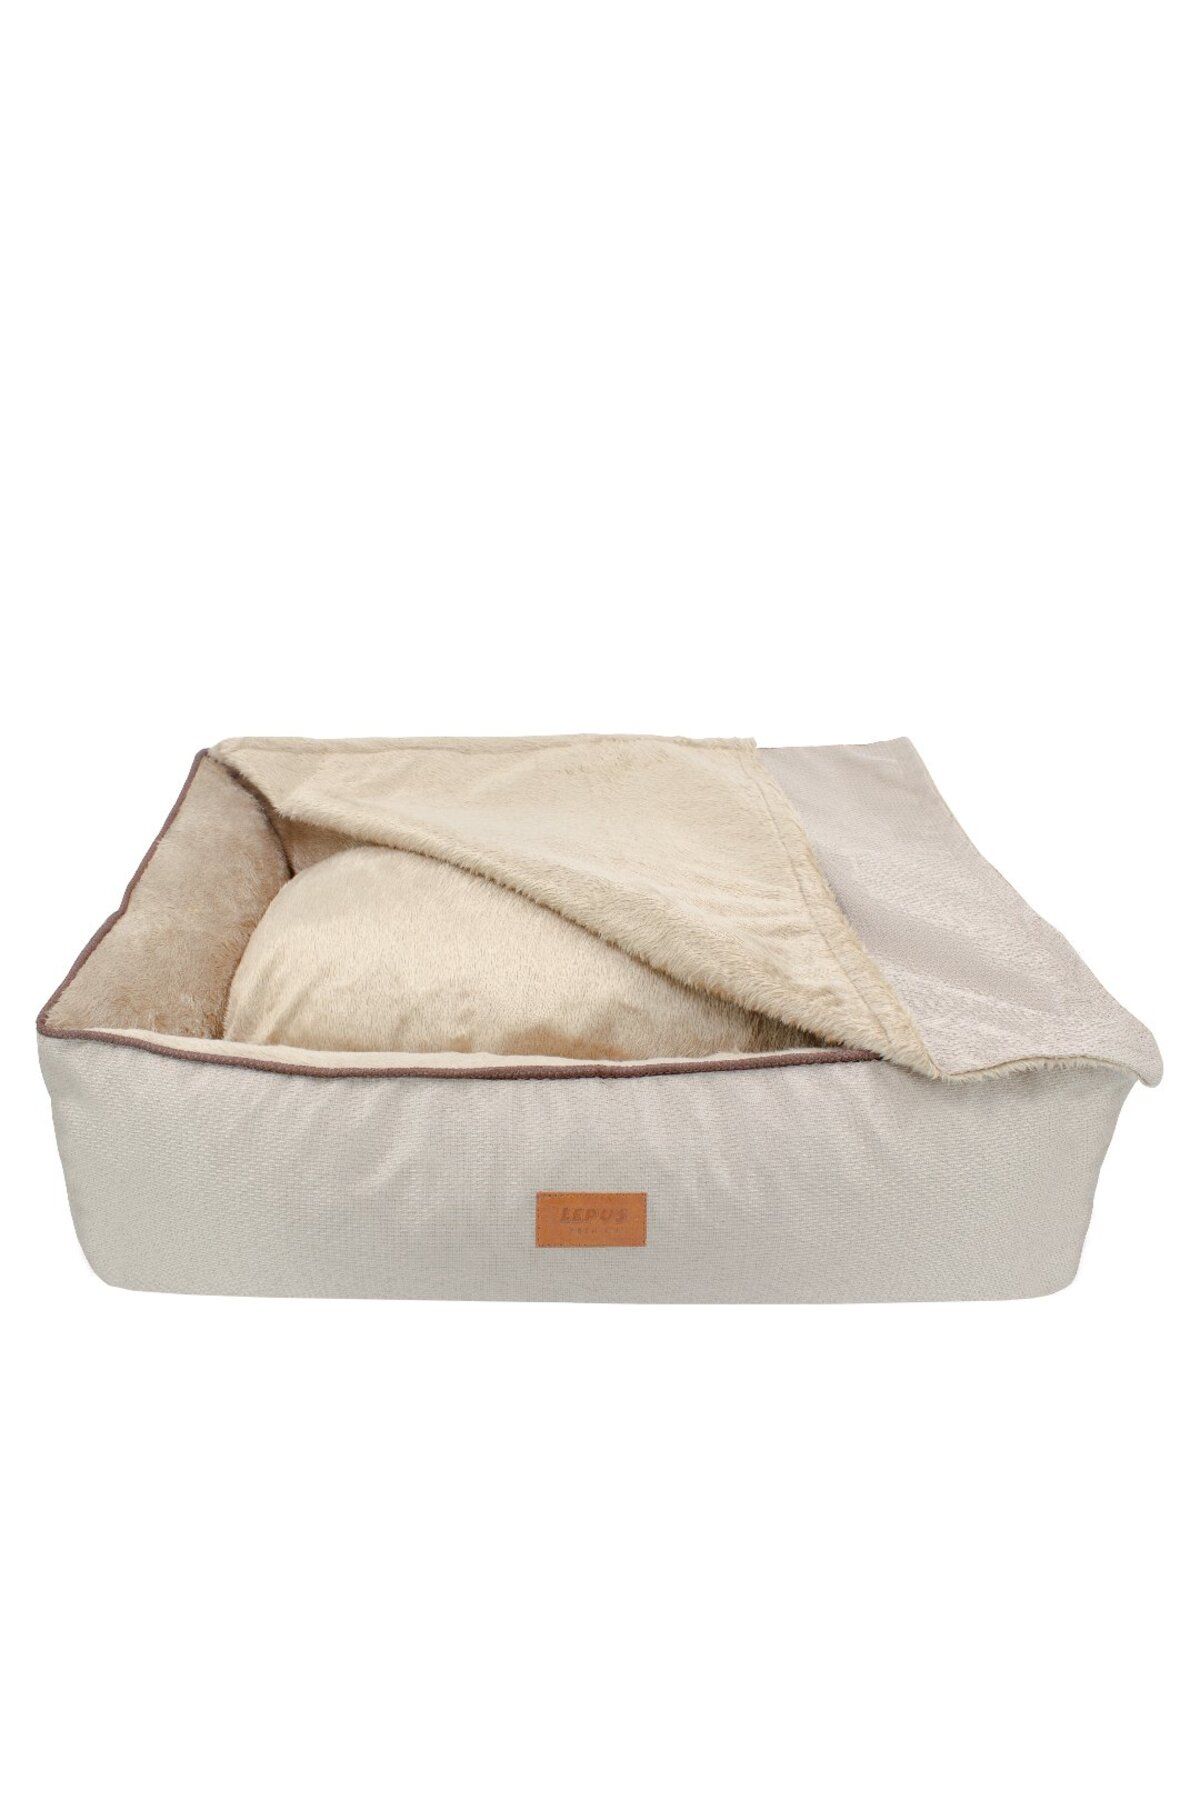 Lepus Winter Bed, köpek ve kedi yatağı medium